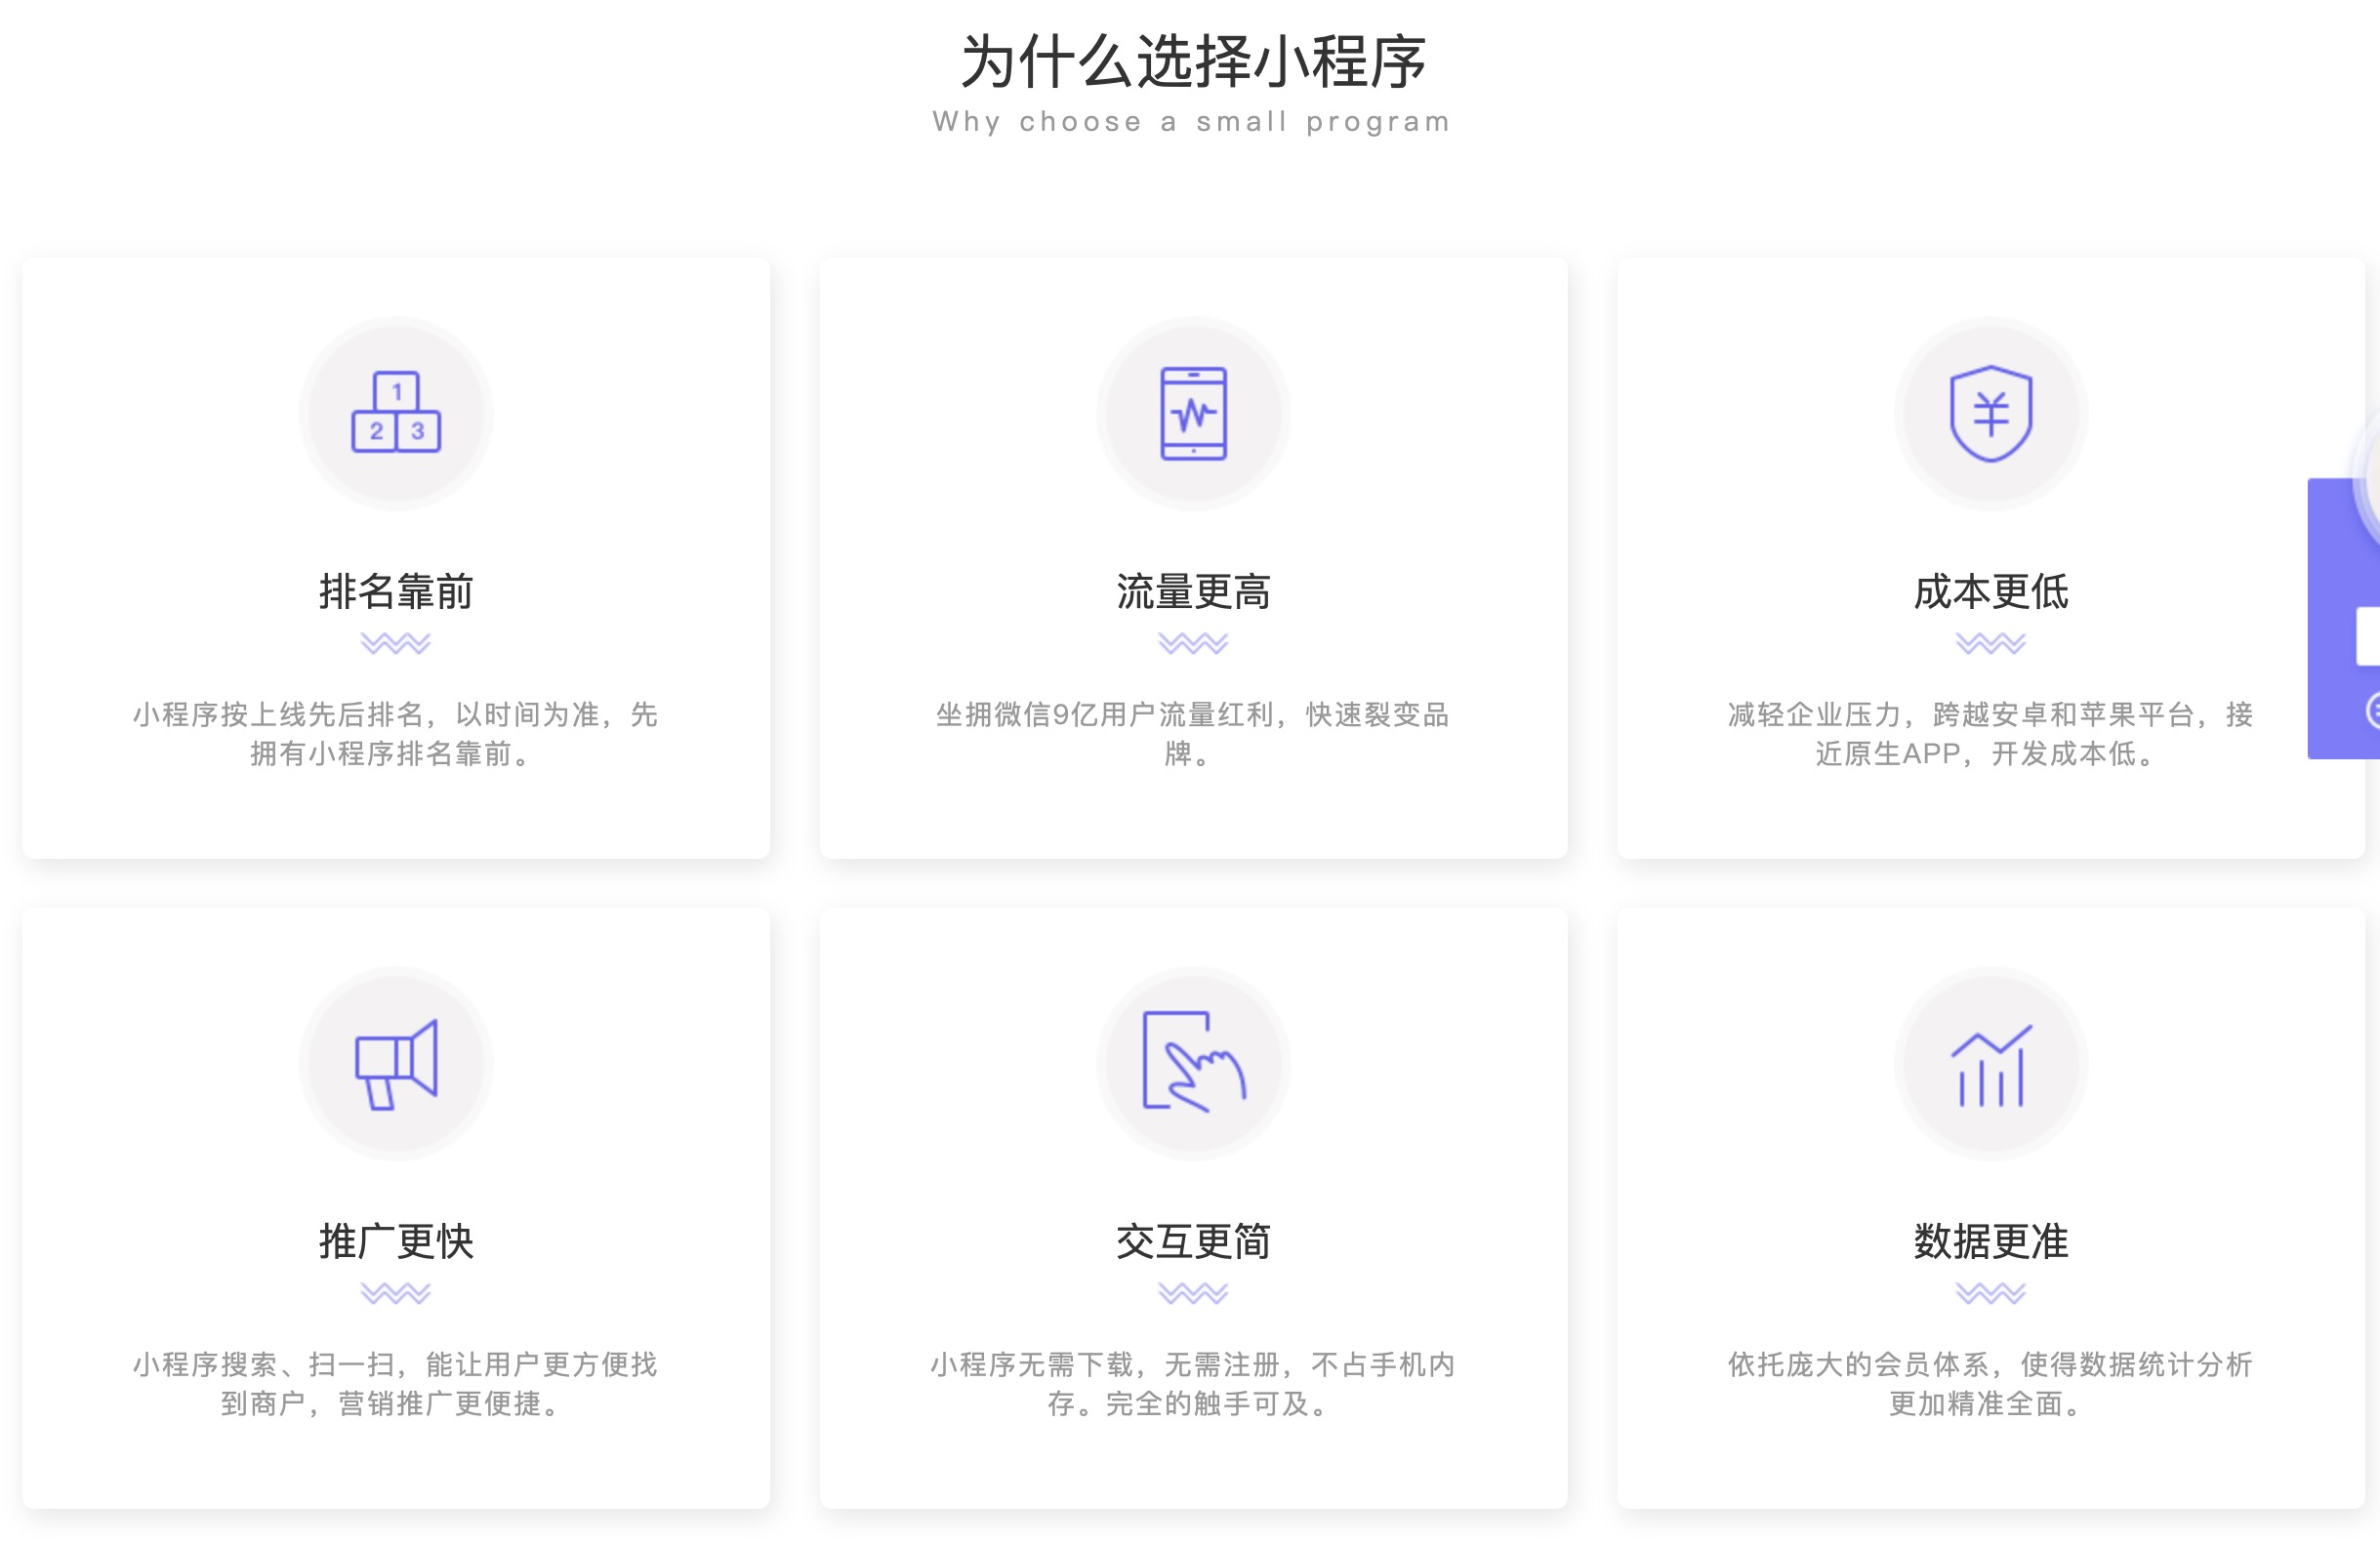 杭州小程序模板定制开发众多行业客户选择_杭州软件开发快速开发-杭州画梦网络科技有限公司